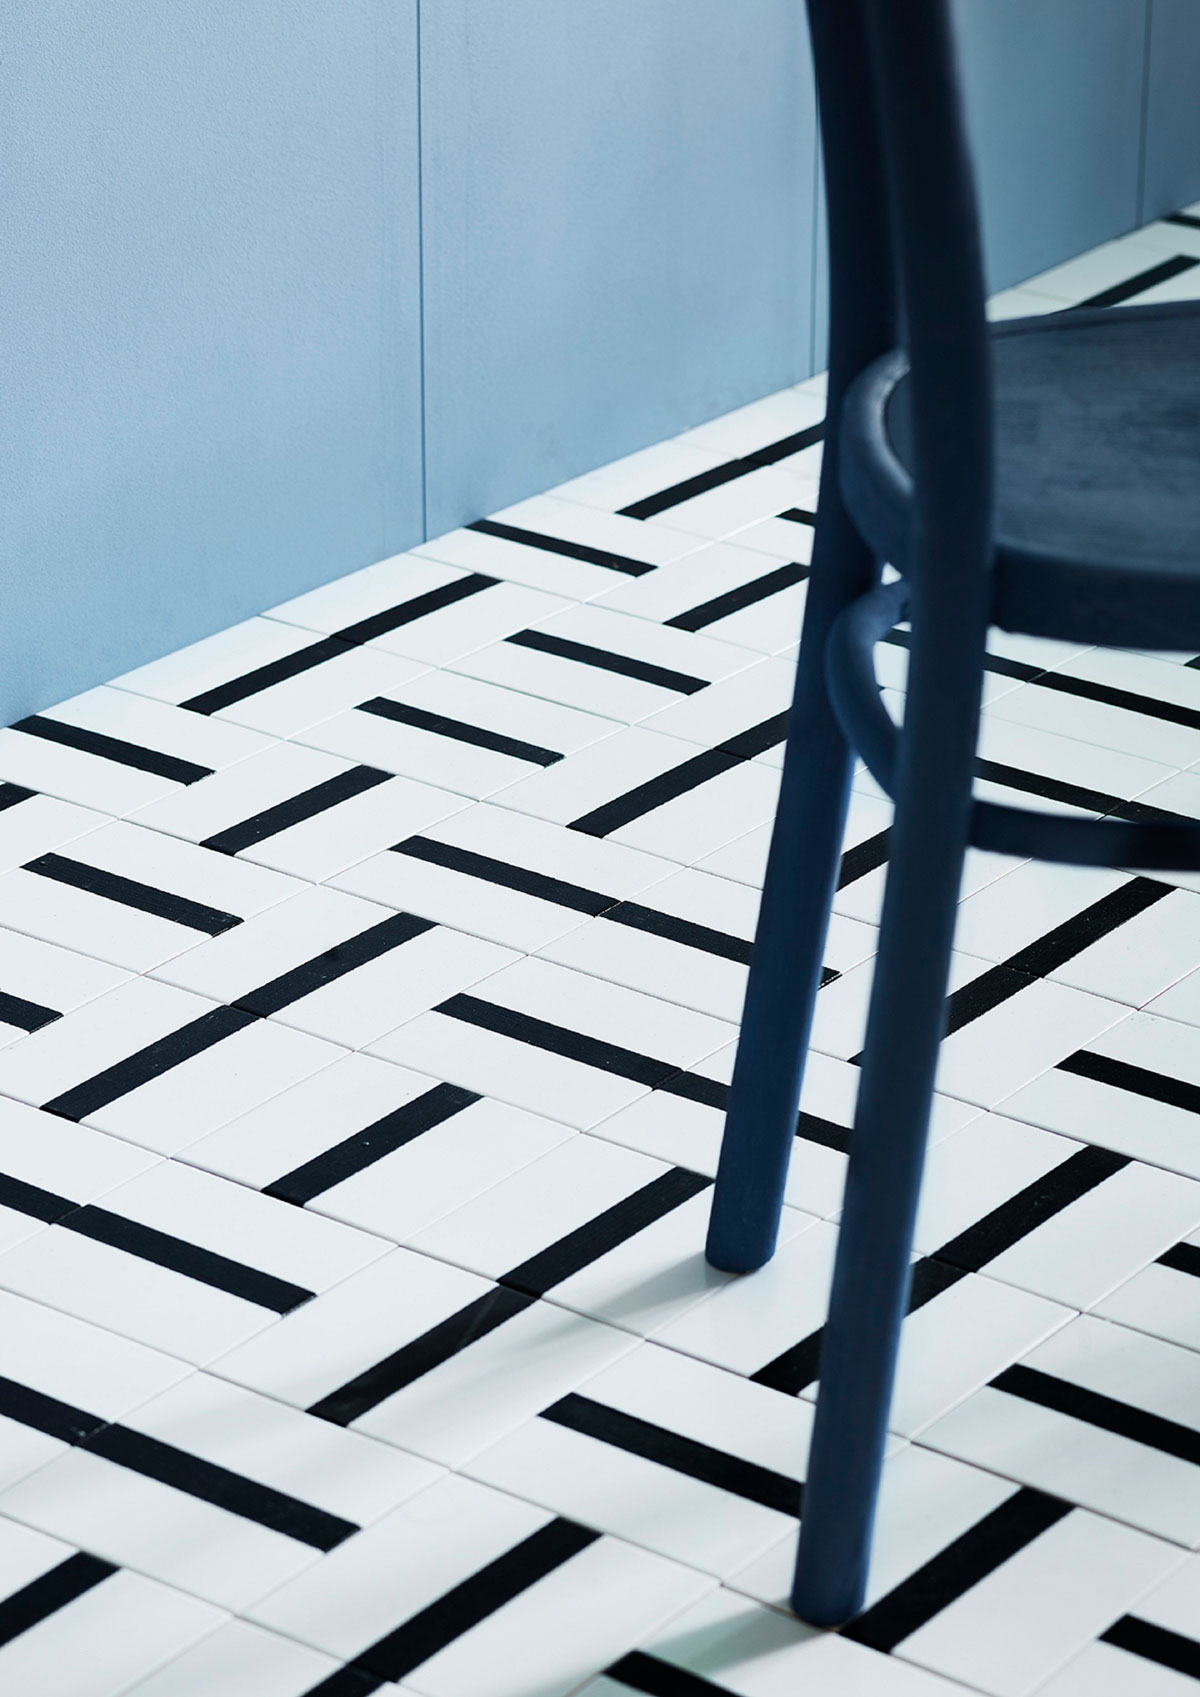 Biela podlaha so vzorom domaľovaným kriedovými farbami